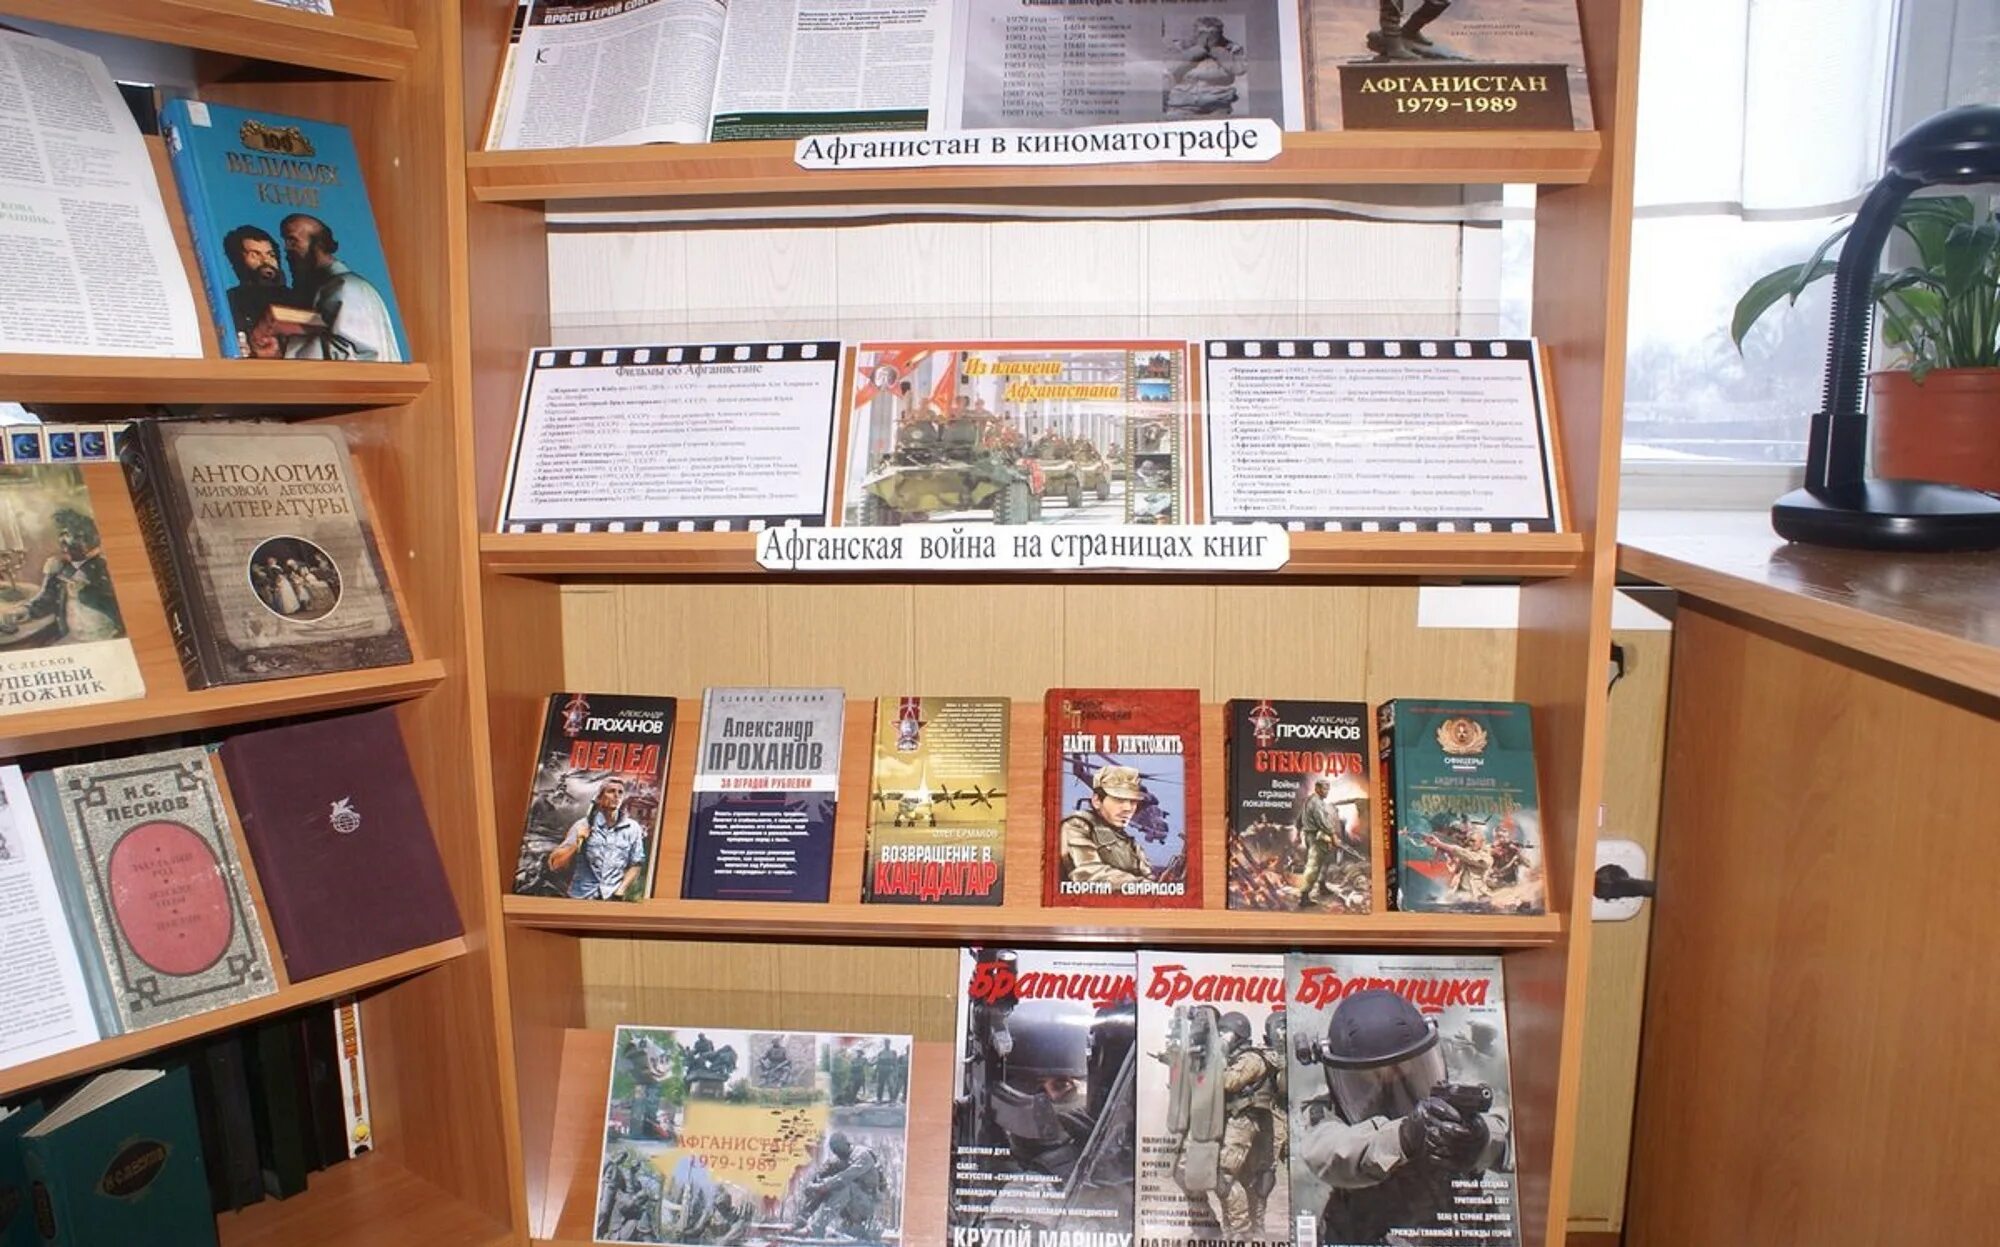 Афганистан выставка в библиотеке. Книжная выставка Афганистан в библиотеке. Выставка к Афгану в библиотеке. Мероприятие по Афгану в библиотеке. Мероприятие день афганистана